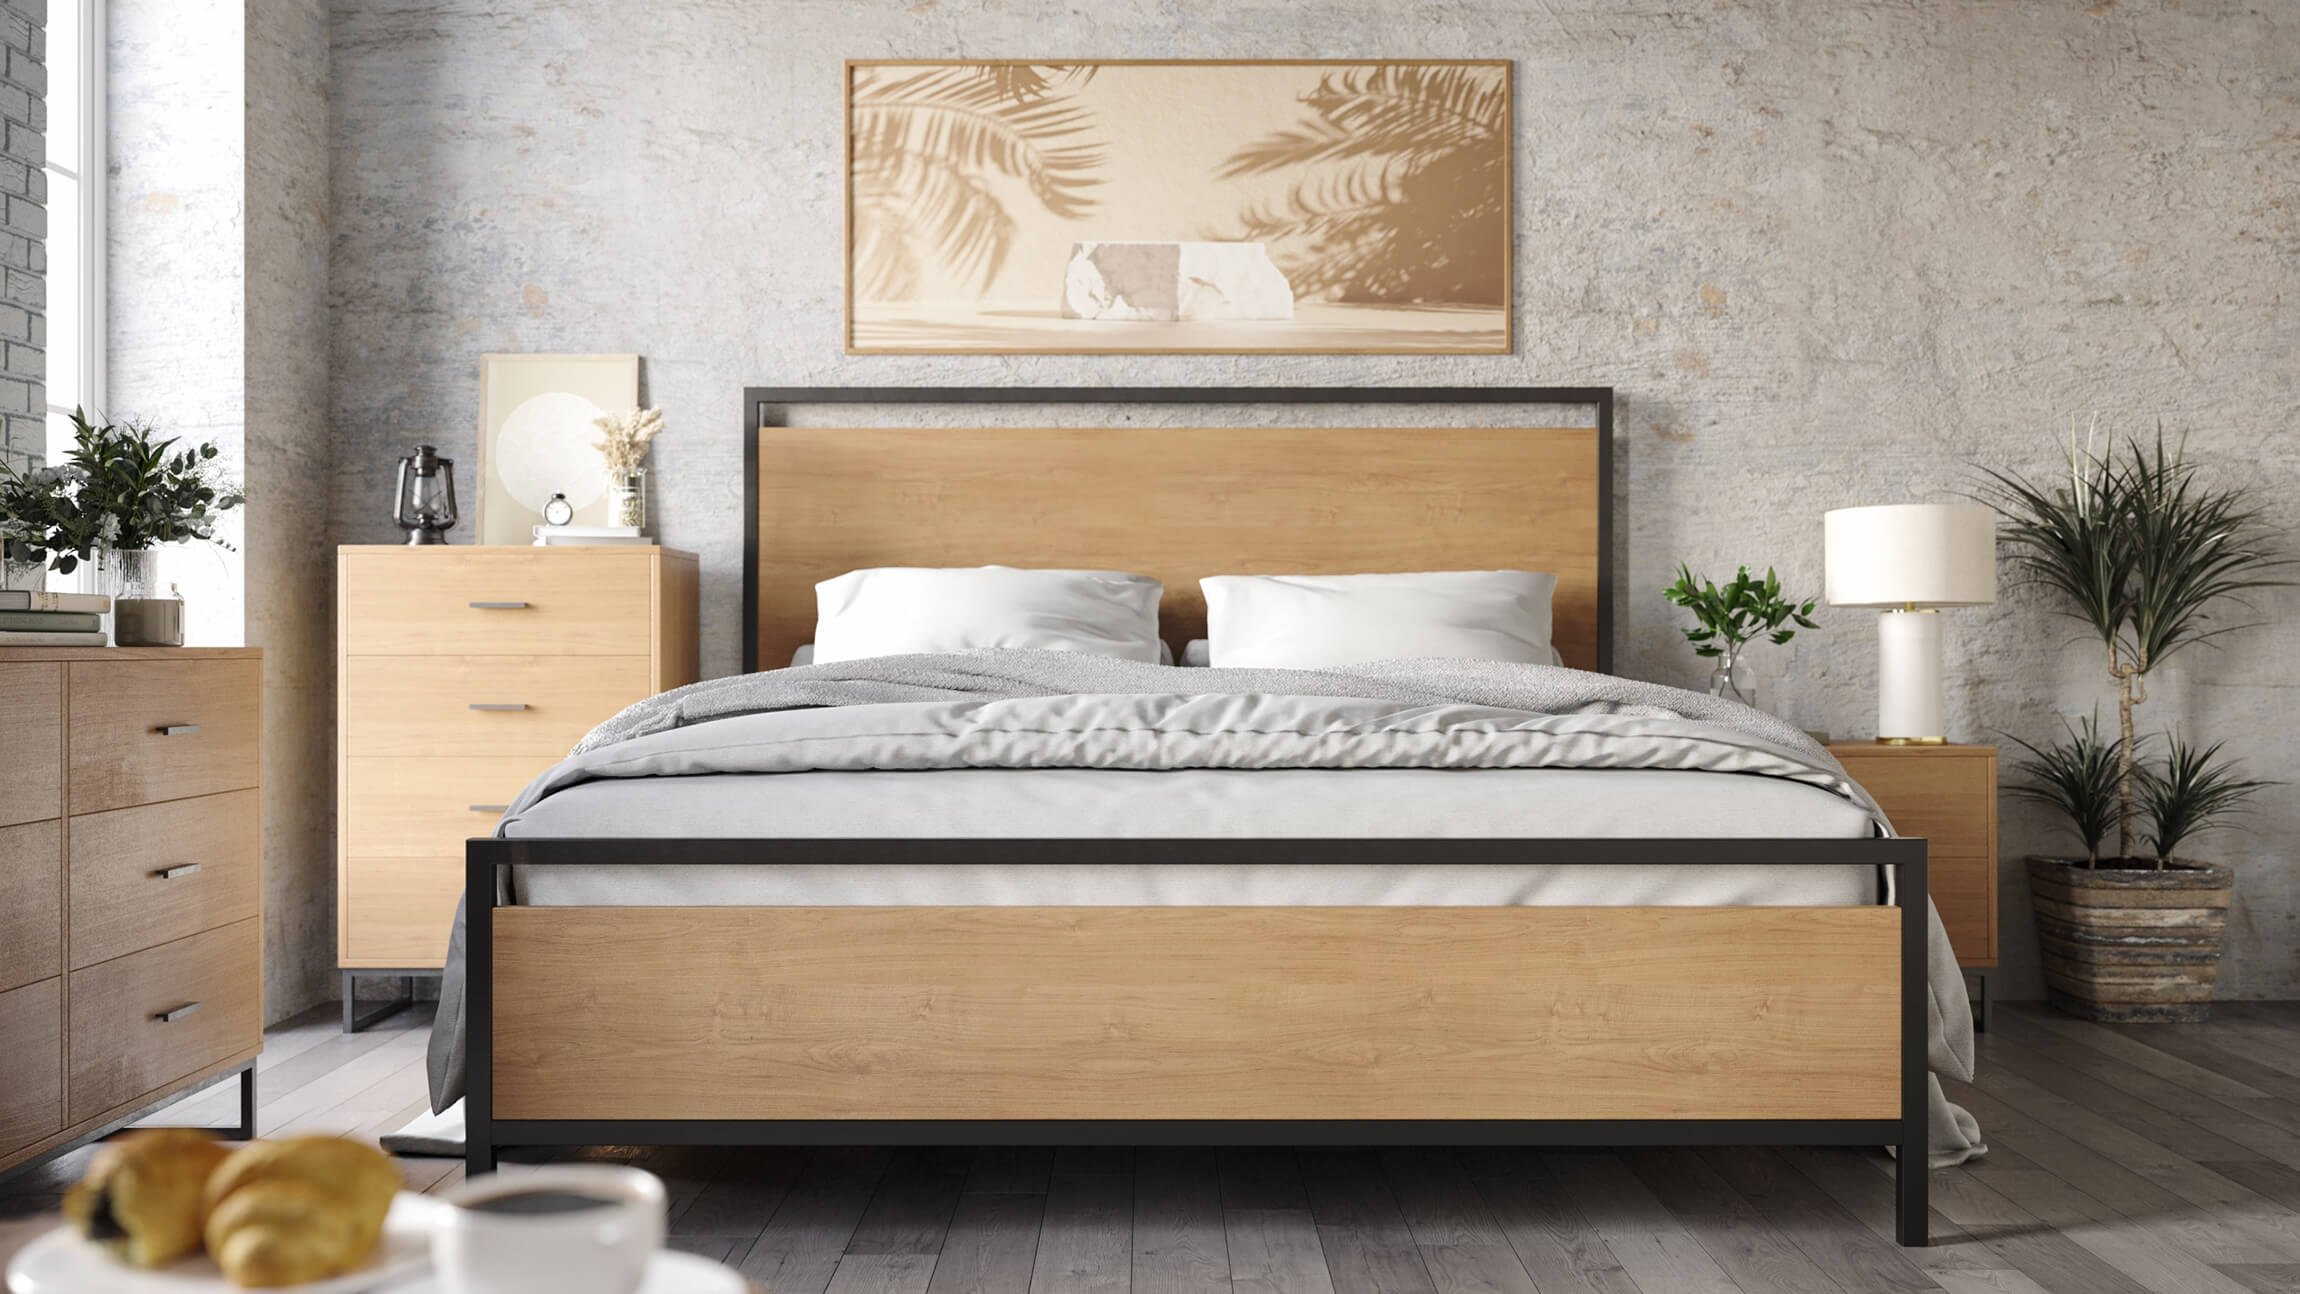 3D Visualization for Wooden Bedroom Furniture